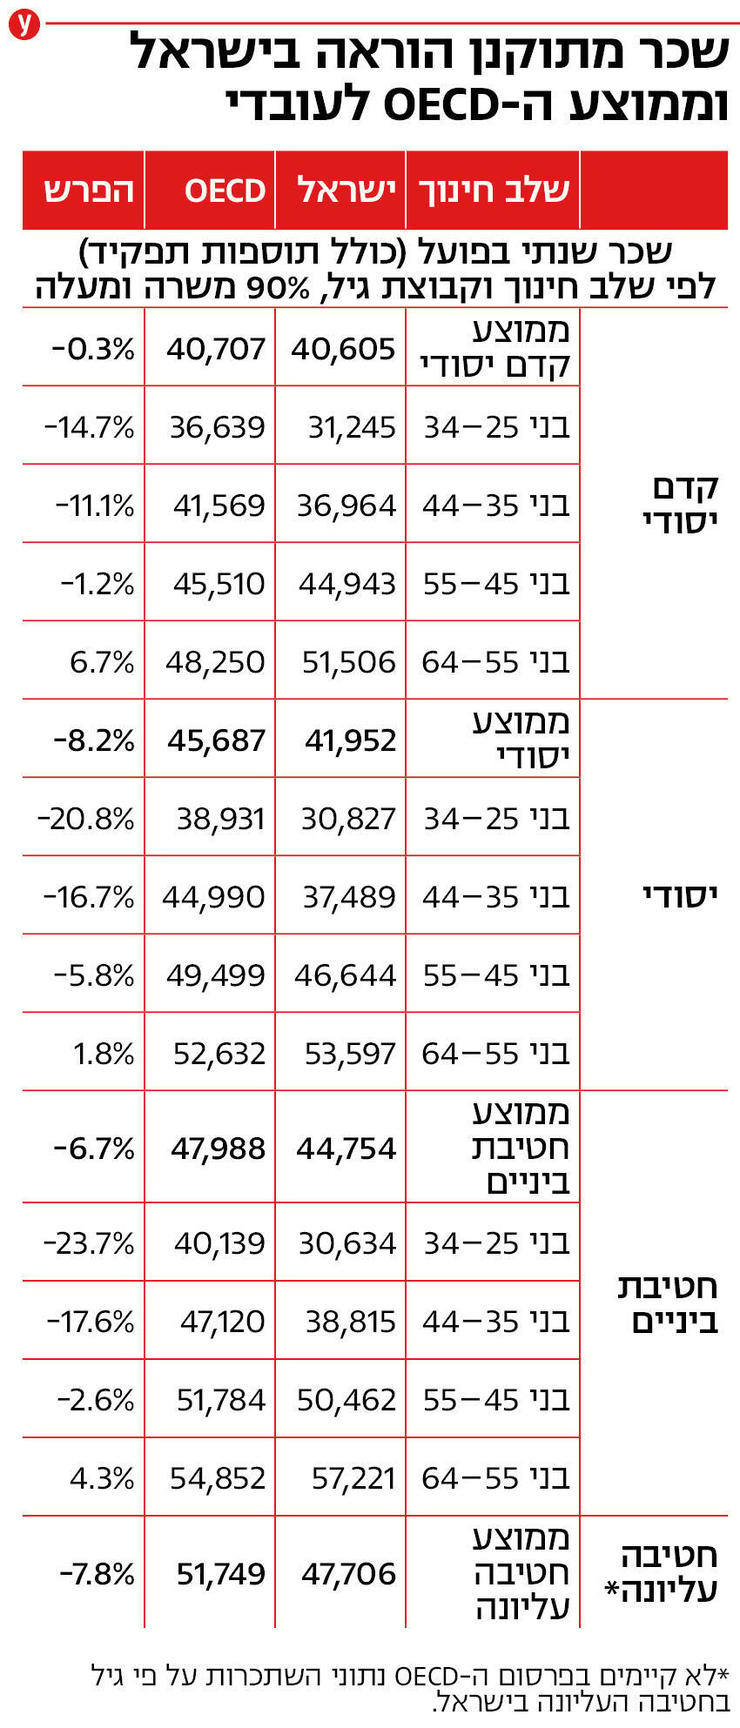 אינפו שכר מתוקנן הוראה ישראל ממוצע מדינה מדינות     OECD  קדם יסודי שיא ותק